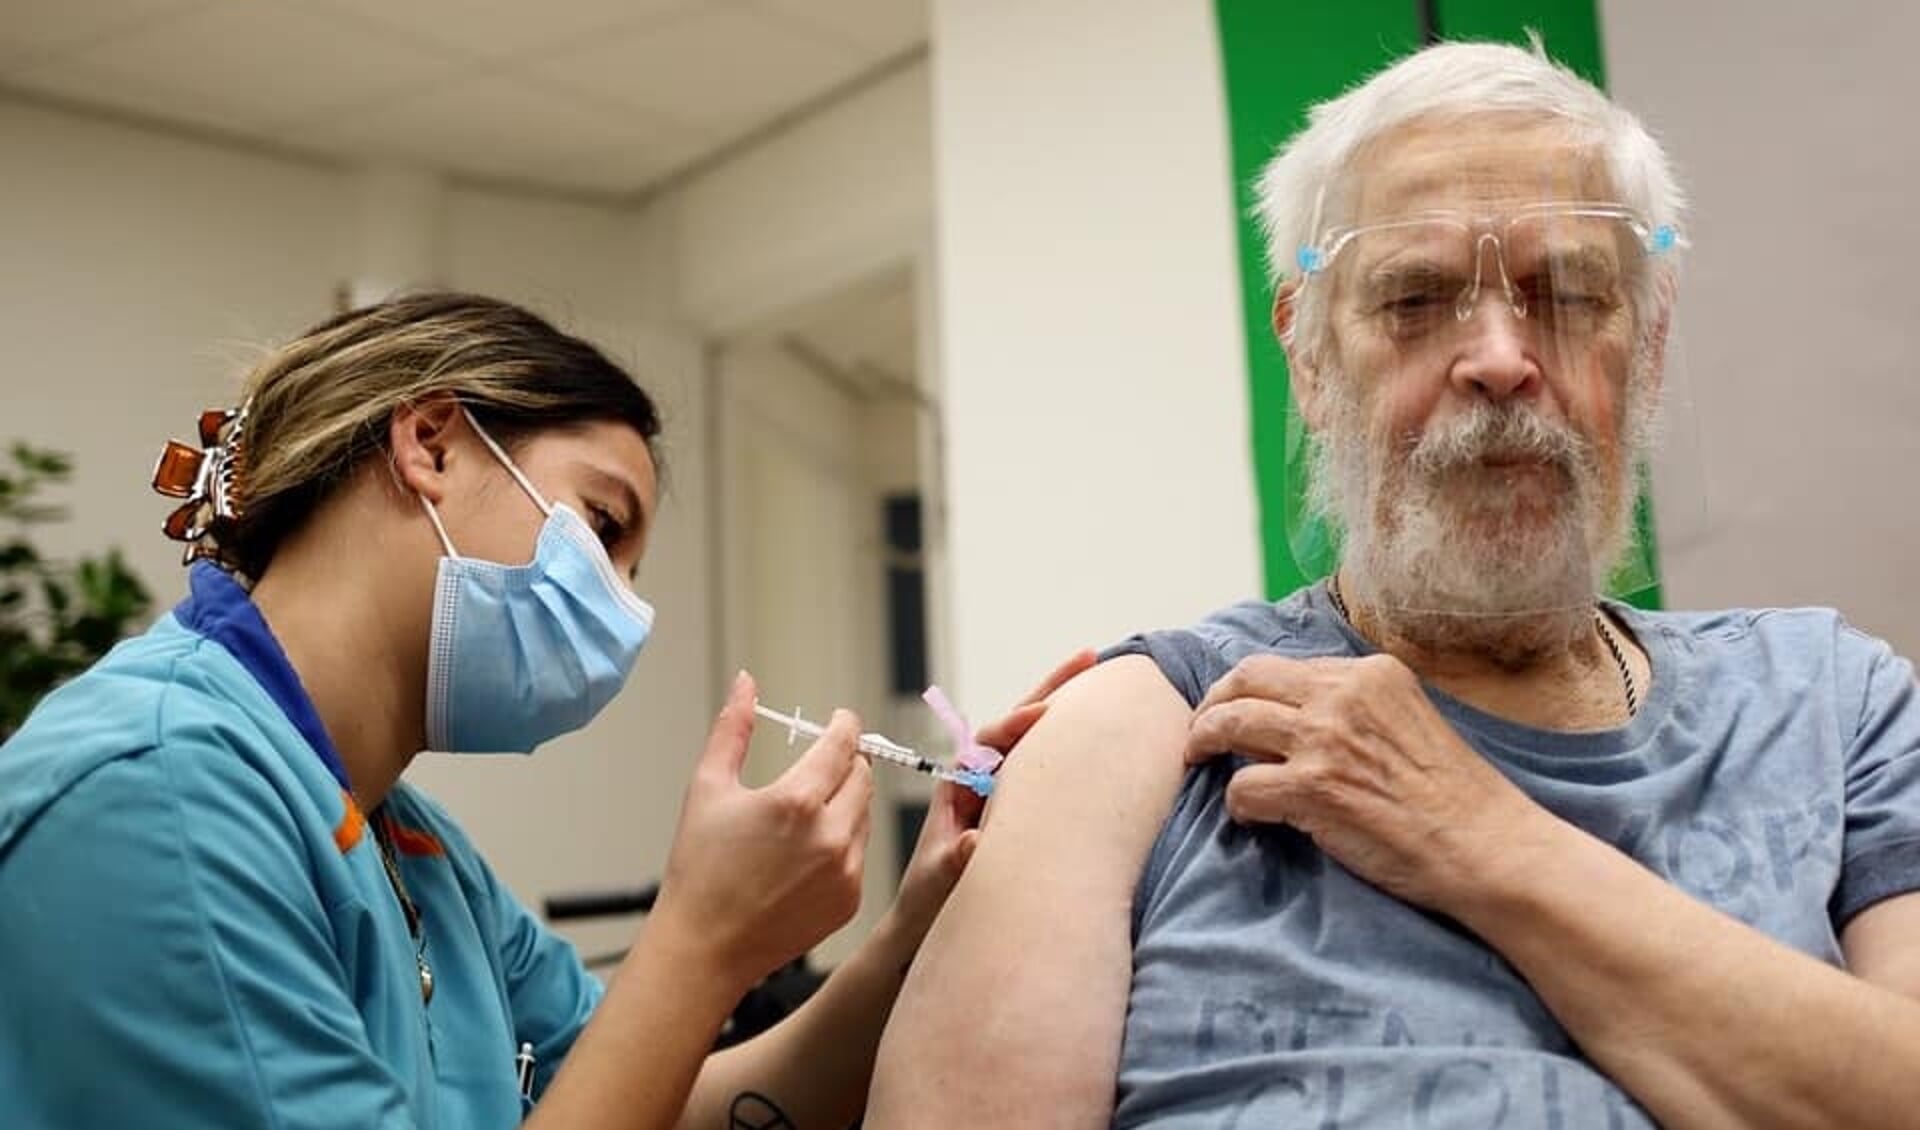 Wolfgang Kriesel (73) was de eerste bewoner van De Gelderhorst die gevaccineerd werd met het coronavaccin.